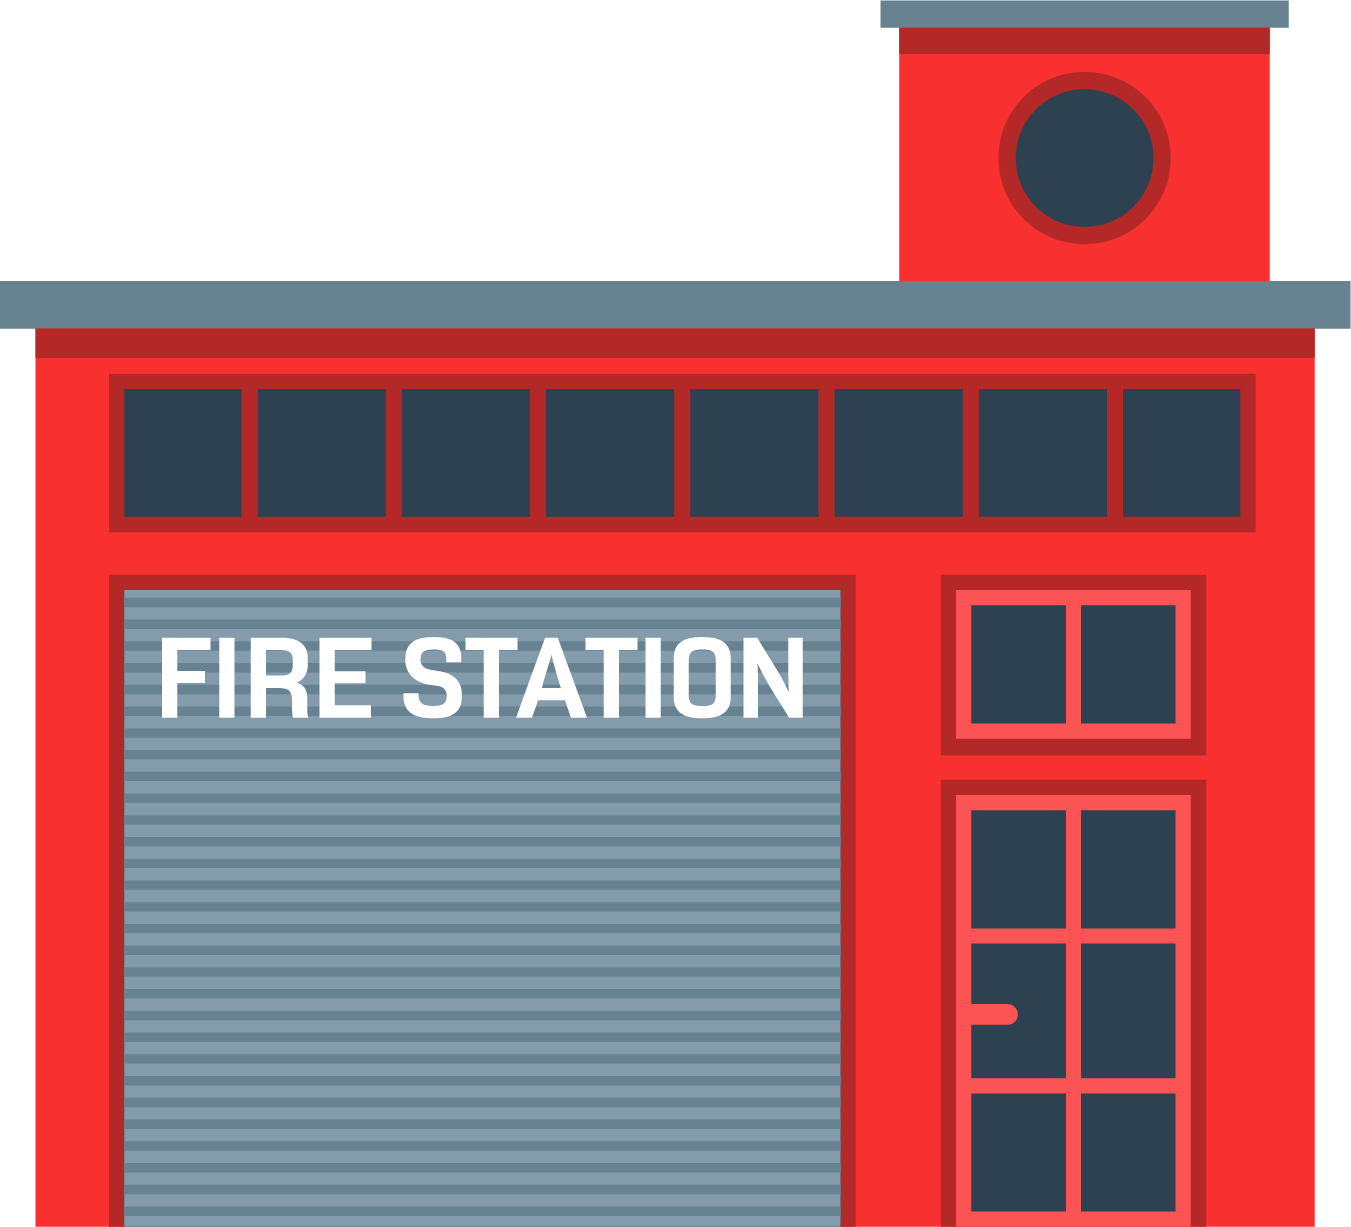 Fire Department Firefighter Fire Station Fire Engine - Fire Department Firefighter Fire Station Fire Engine (1351x1227)